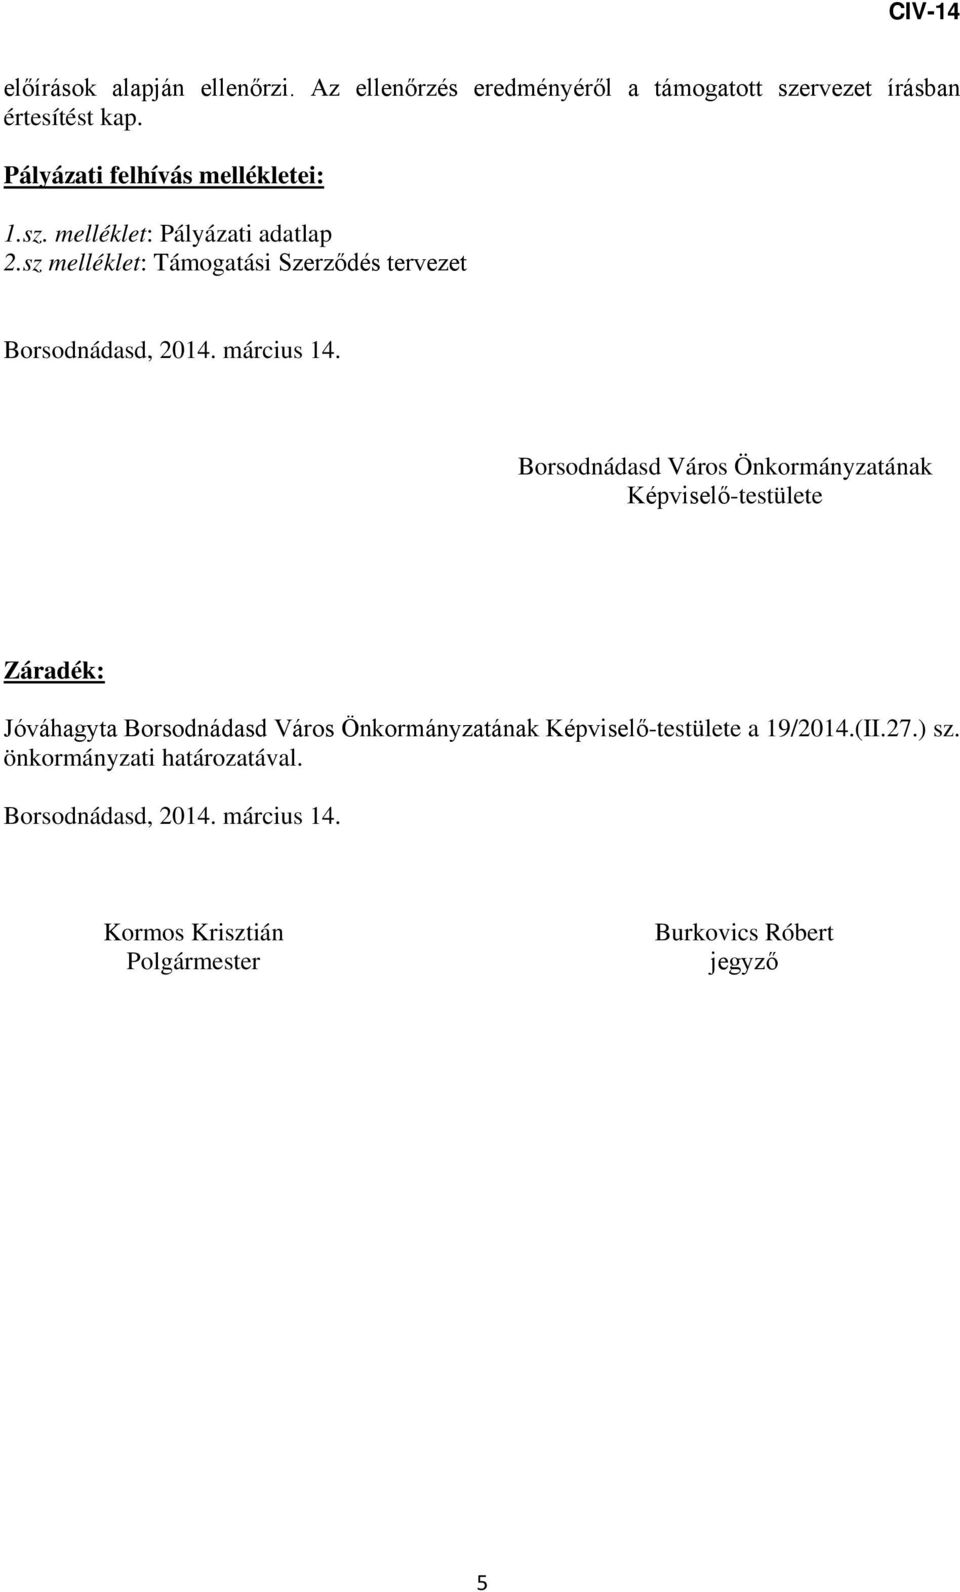 sz melléklet: Támogatási Szerződés tervezet Borsodnádasd, 2014. március 14.